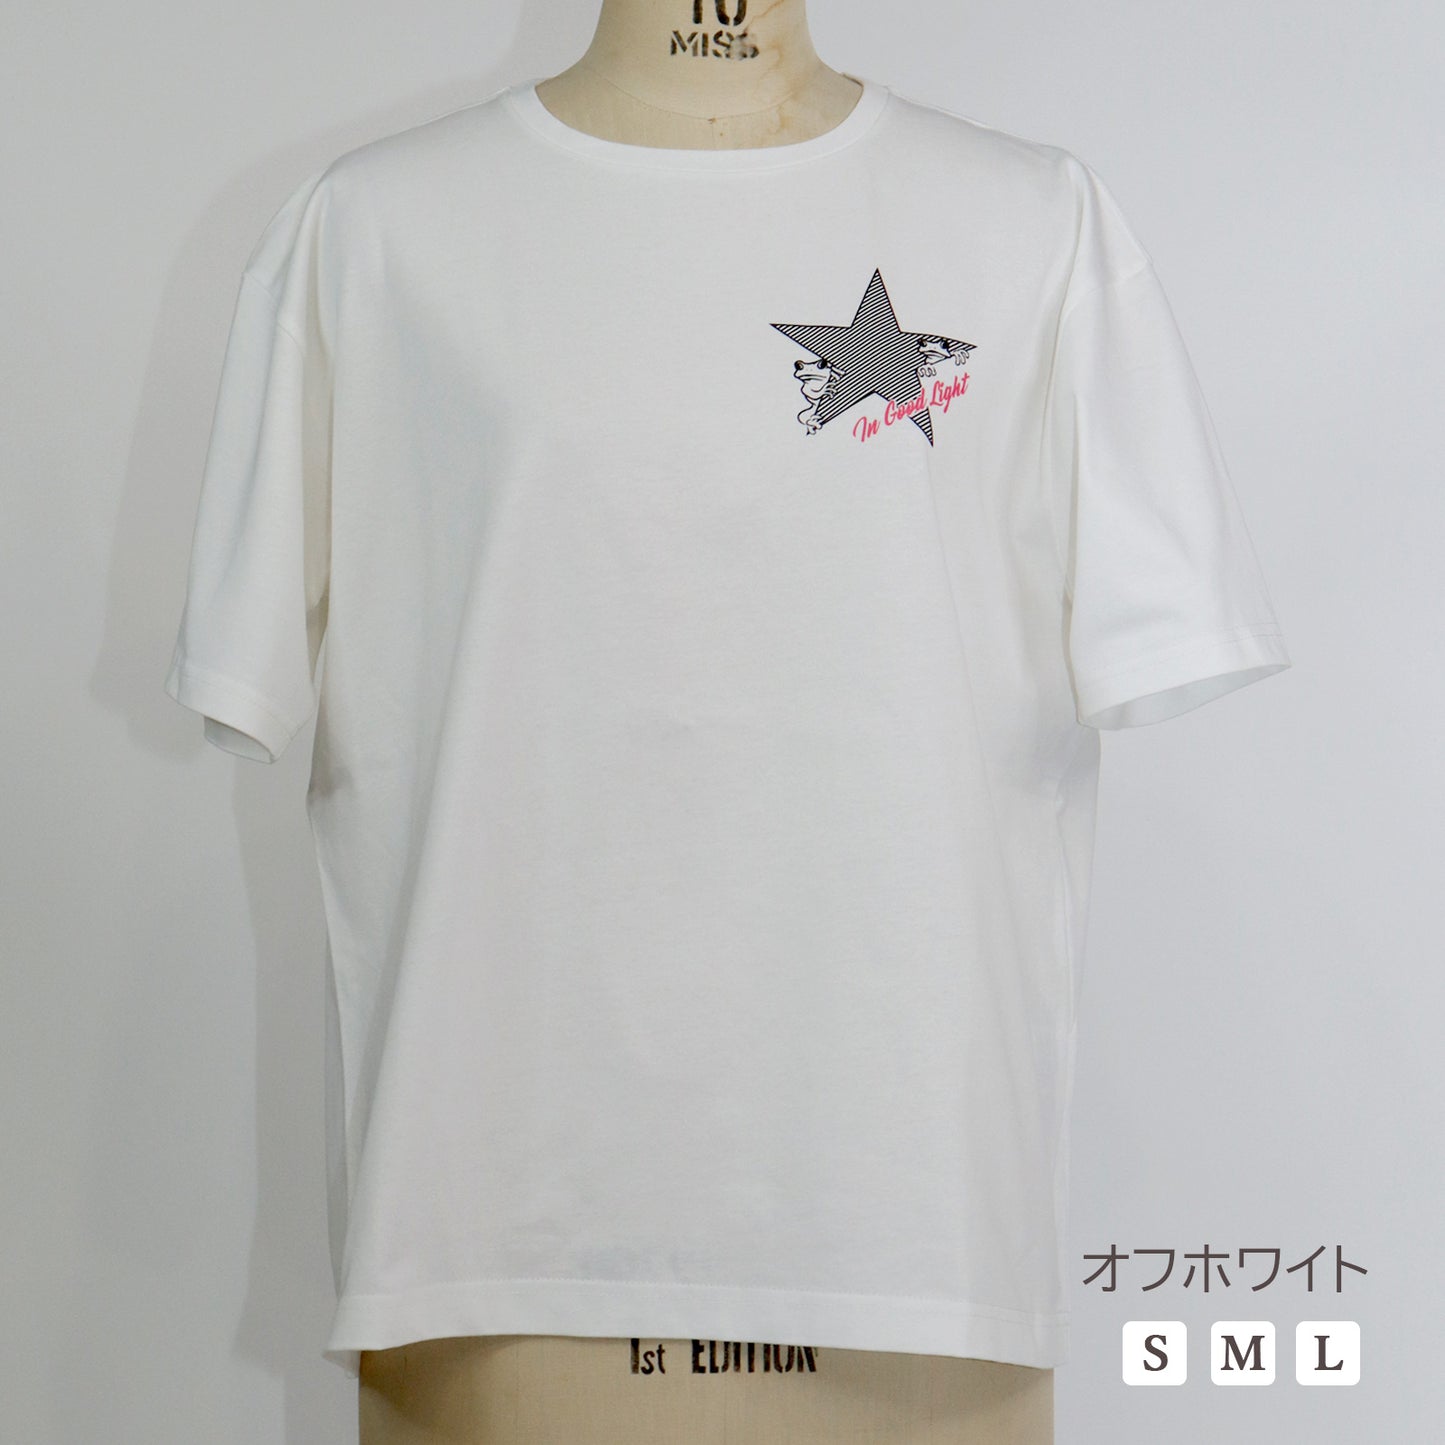 双子カエルプリントTシャツ【小柄女性向け 小さいサイズ対応】